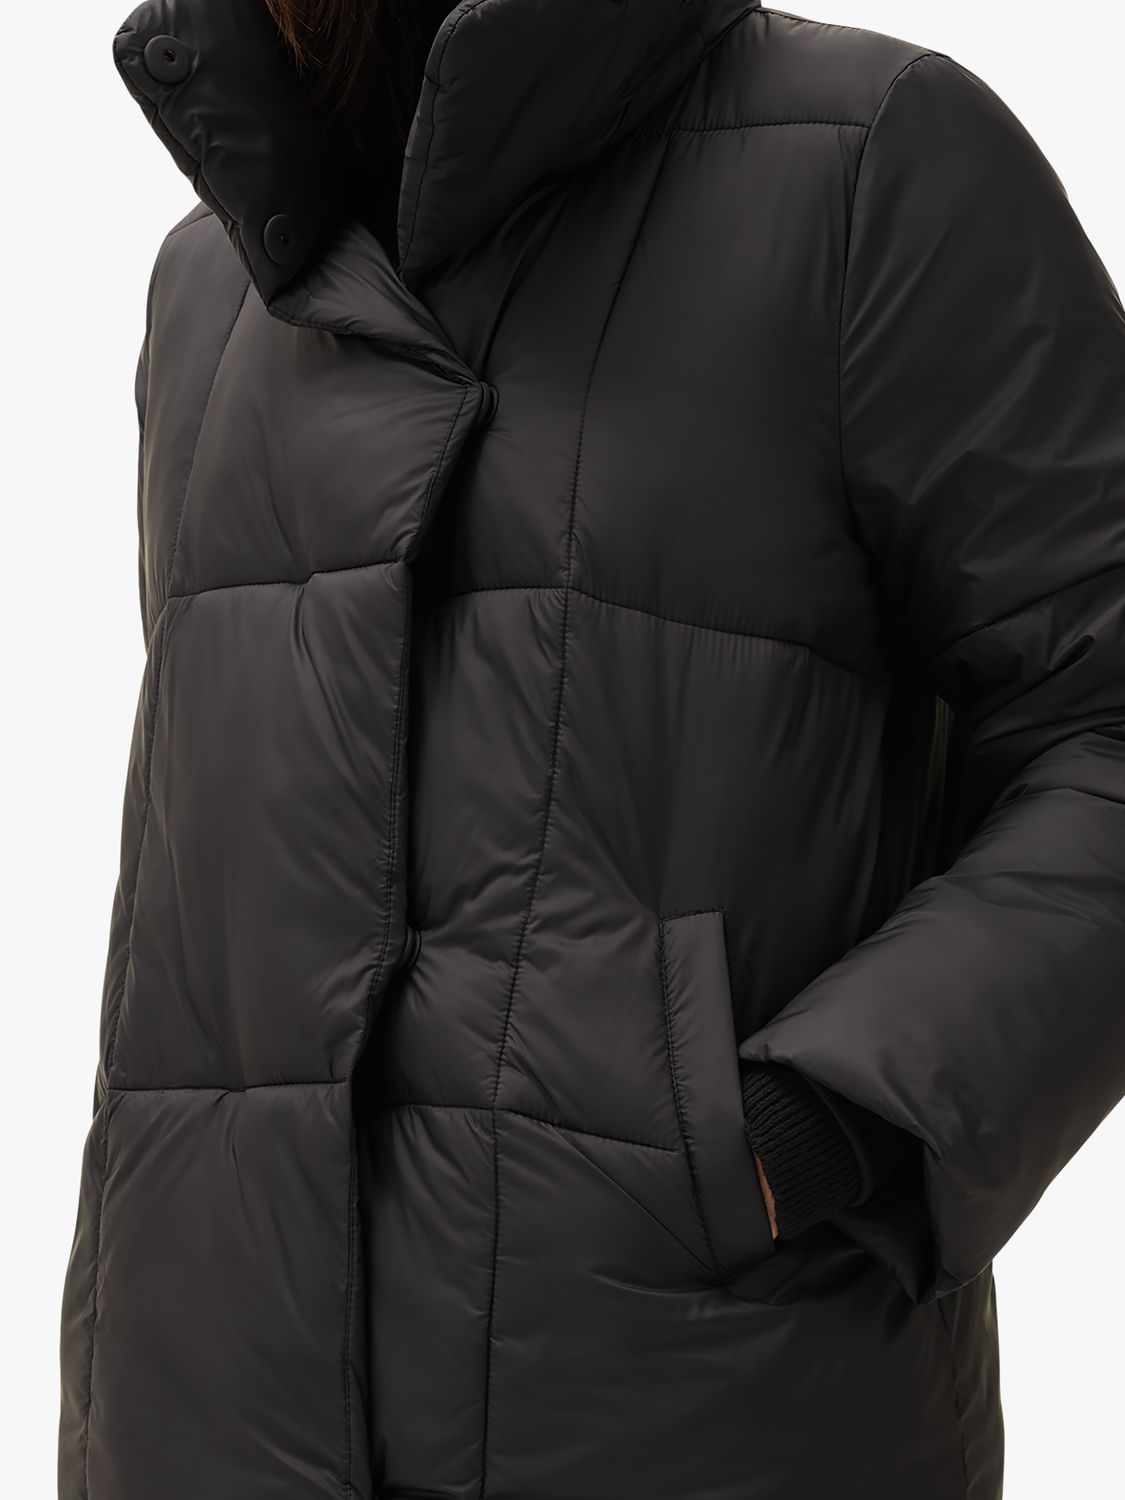 Phase Eight Eshima Short Puffer Jacket, Black at John Lewis & Partners